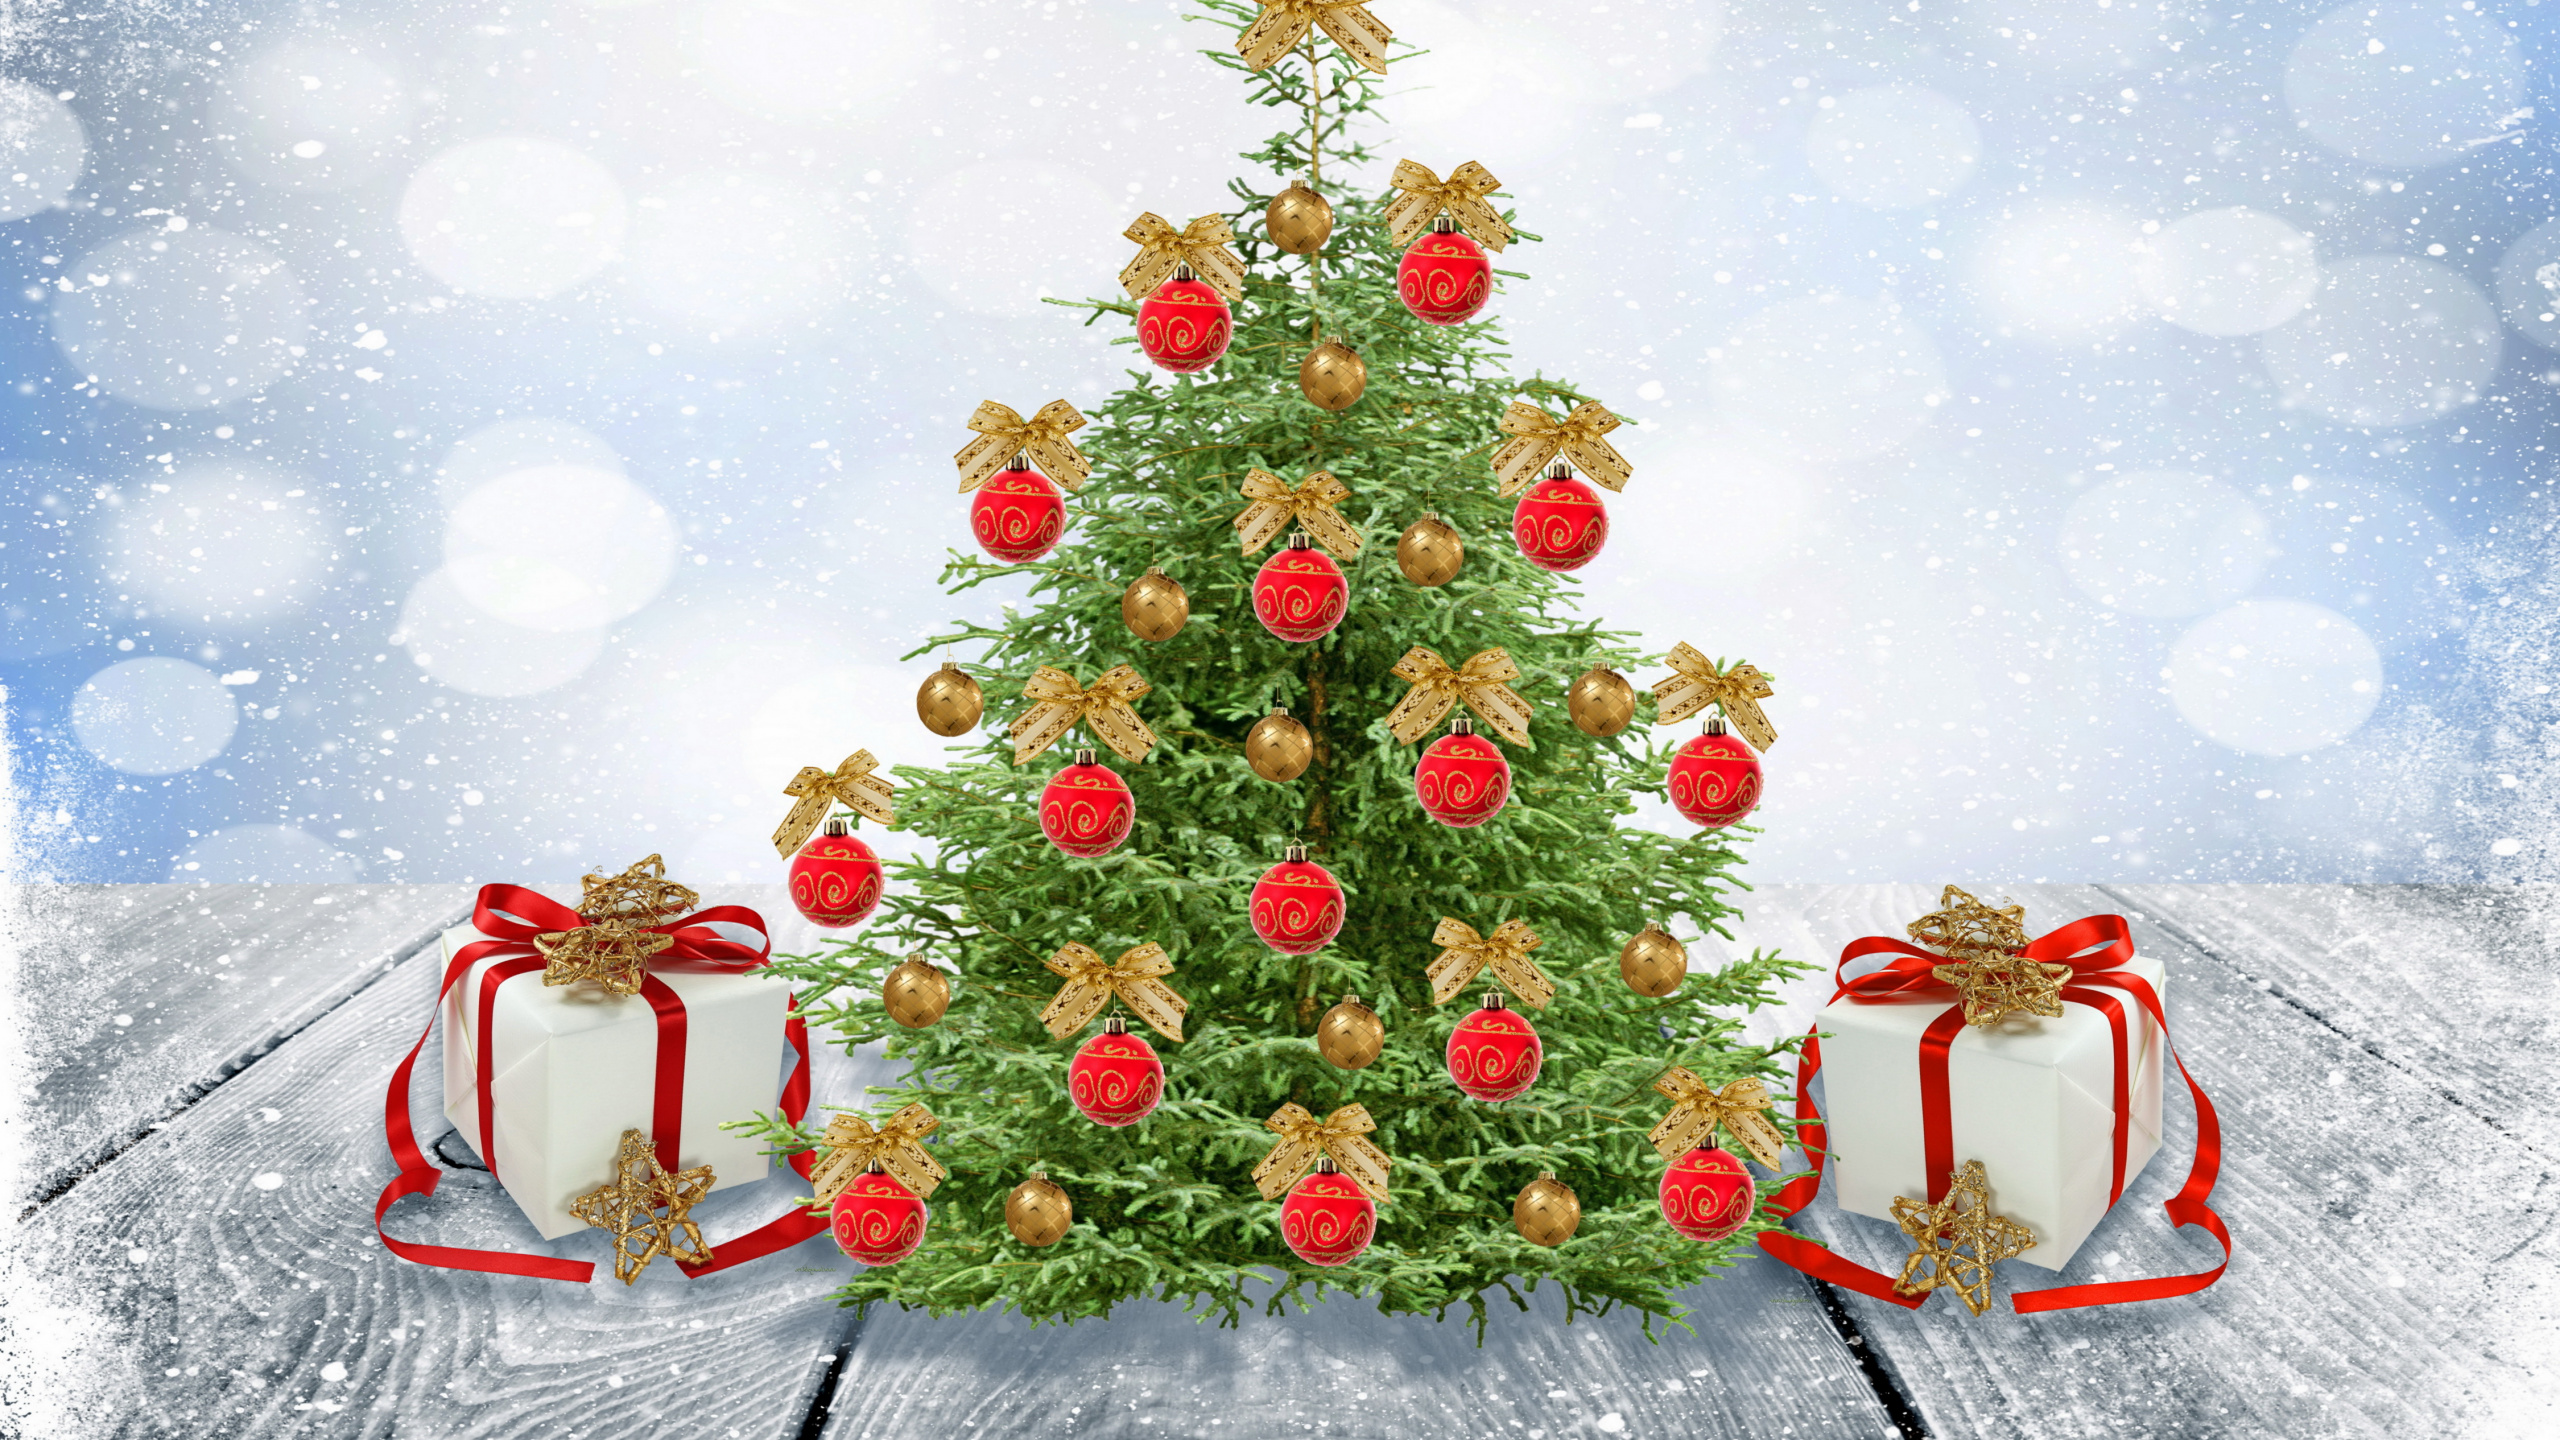 新的一年, 圣诞节那天, 圣诞老人, 圣诞树, 圣诞装饰 壁纸 2560x1440 允许